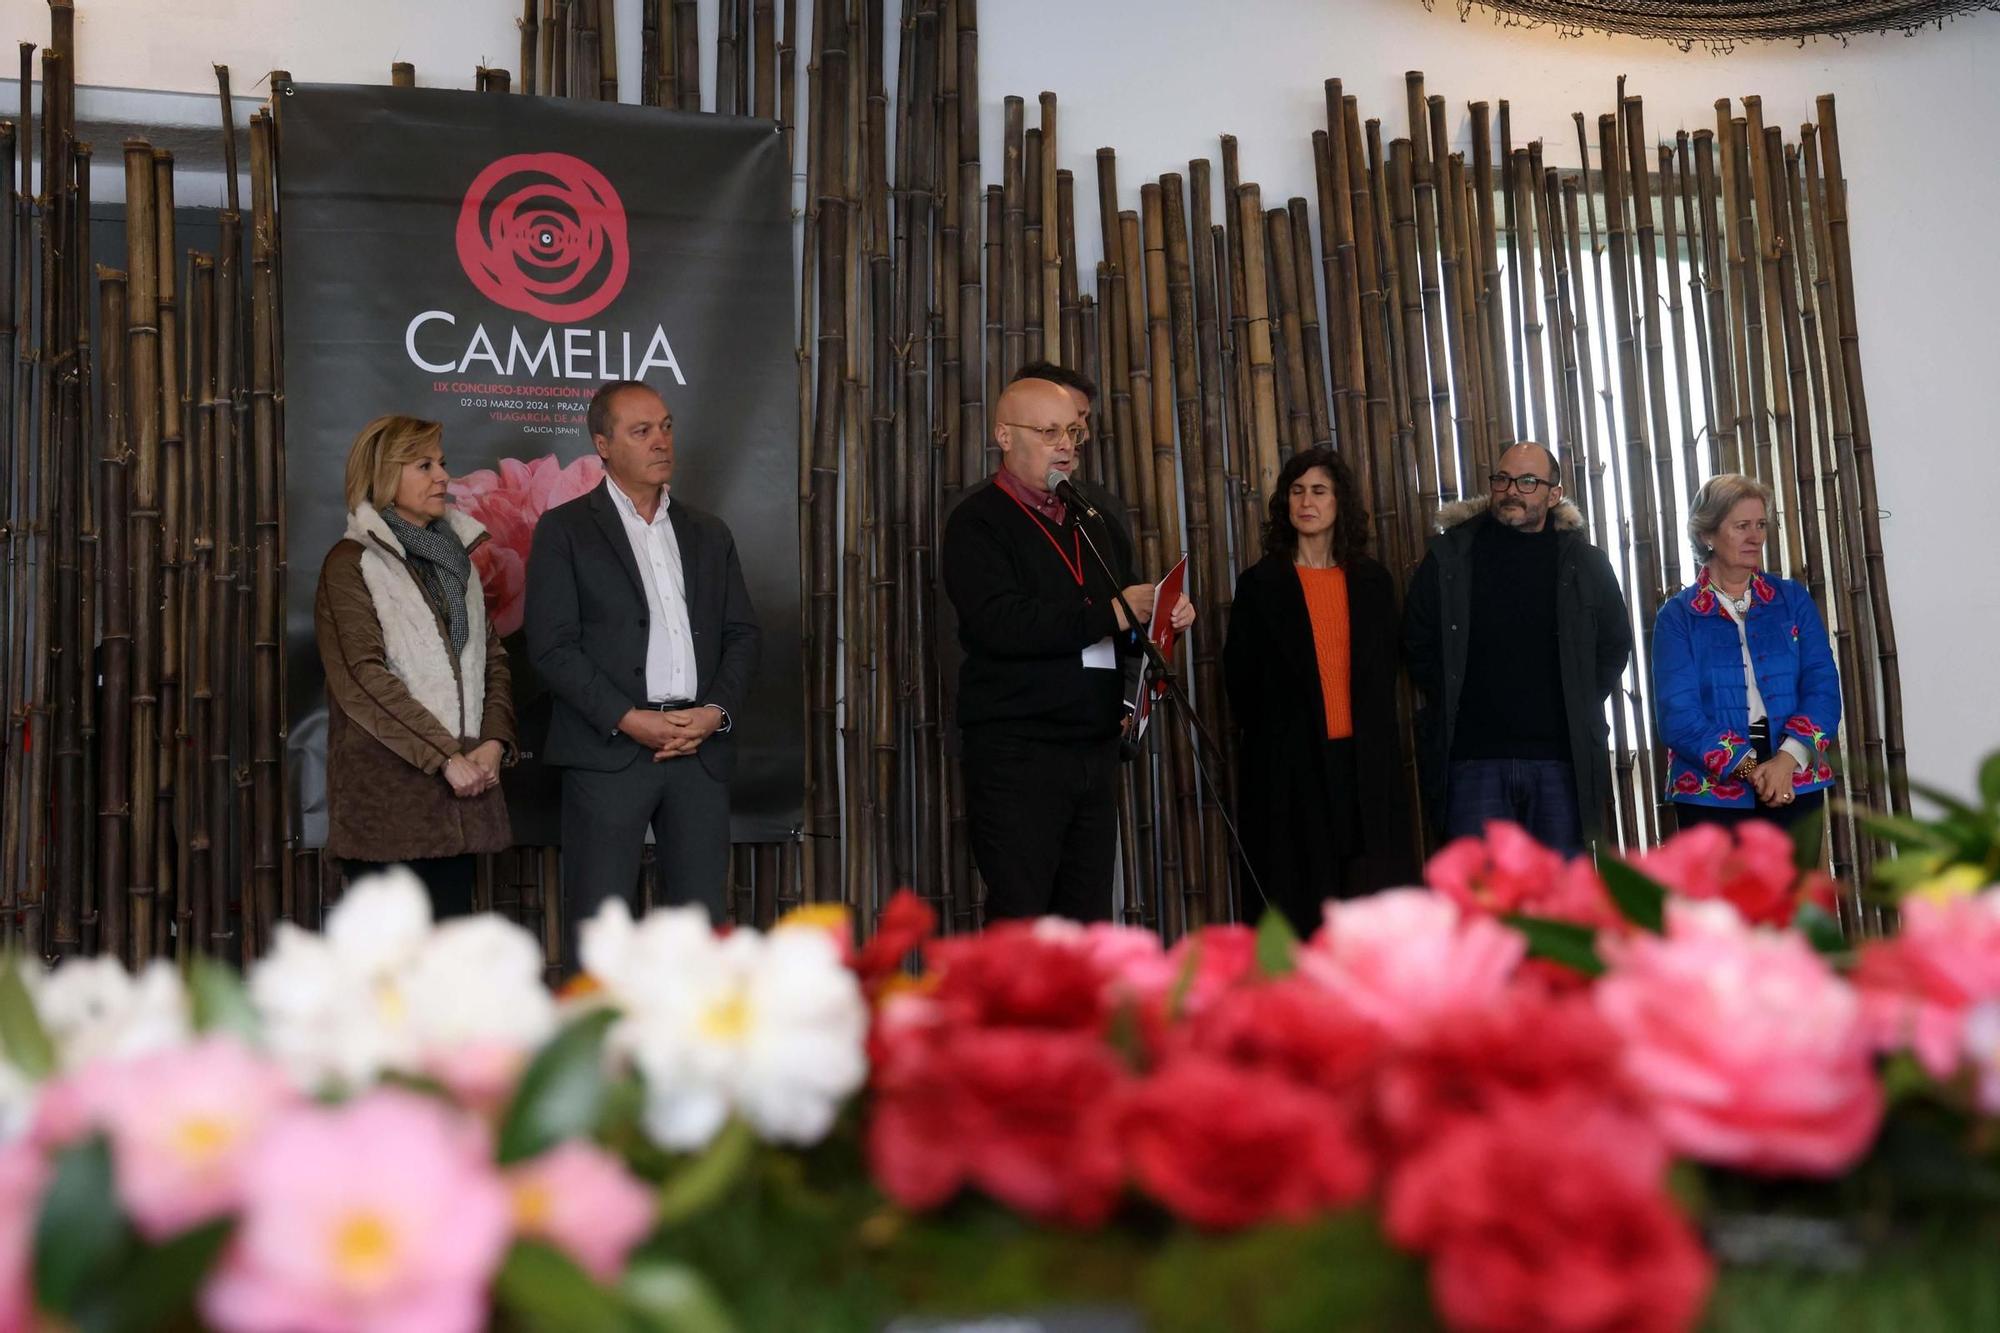 Así fue la 59 exposición internacional de la camelia, en Vilagarcía.